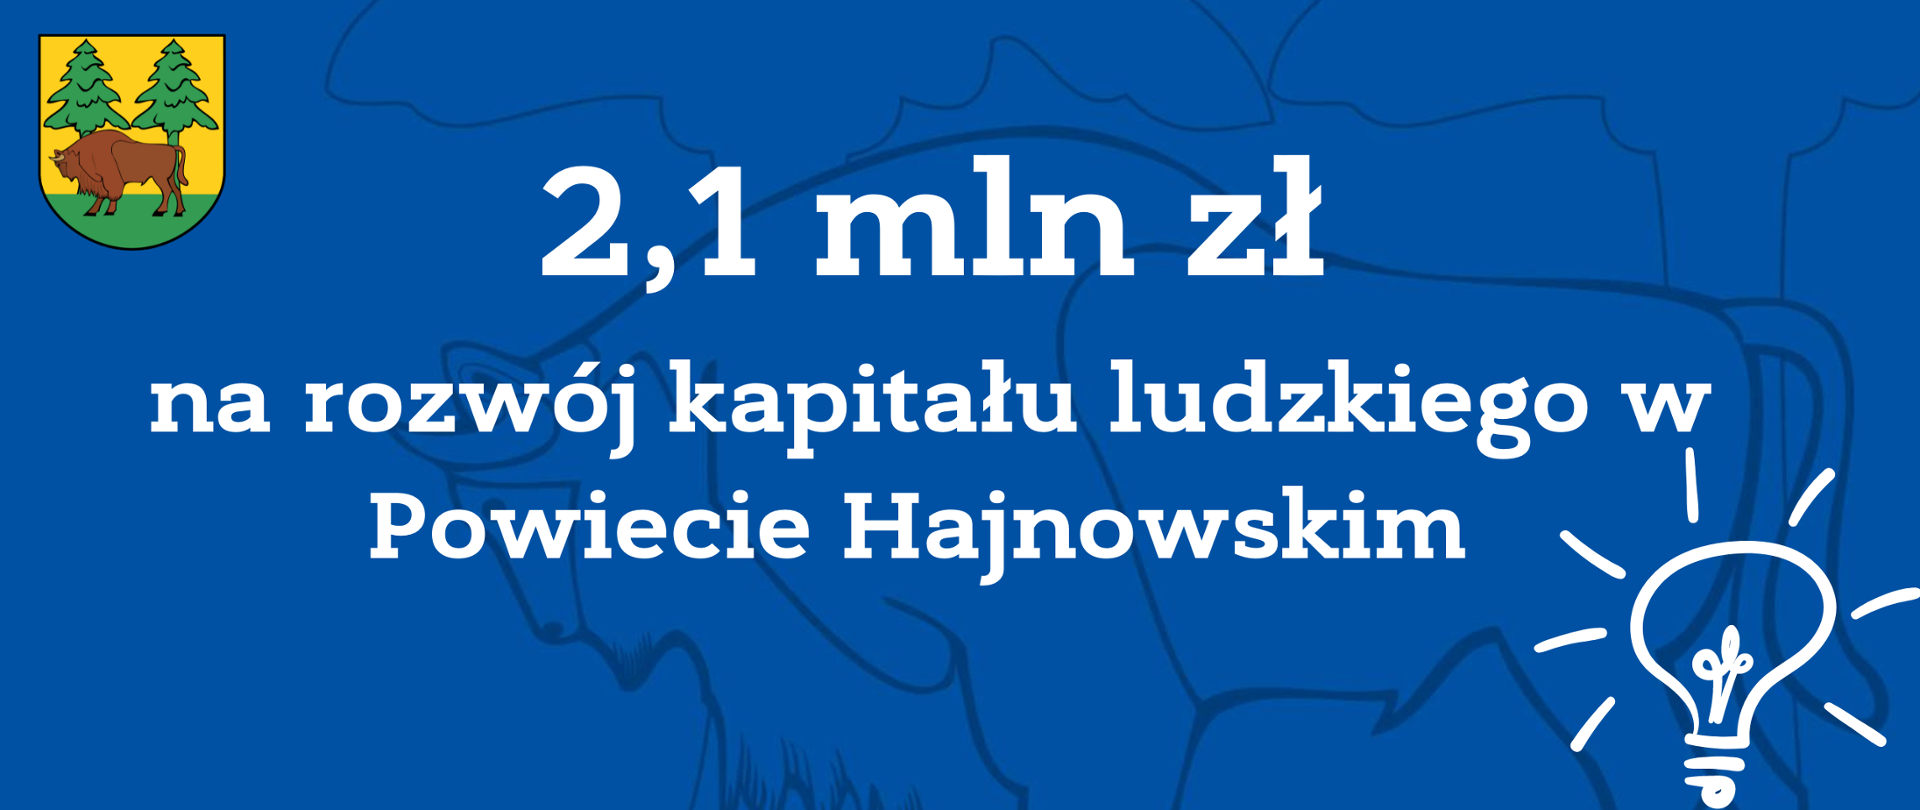 2,1 mln zł na rozwój kapitału ludzkiego w Powiecie Hajnowskim 